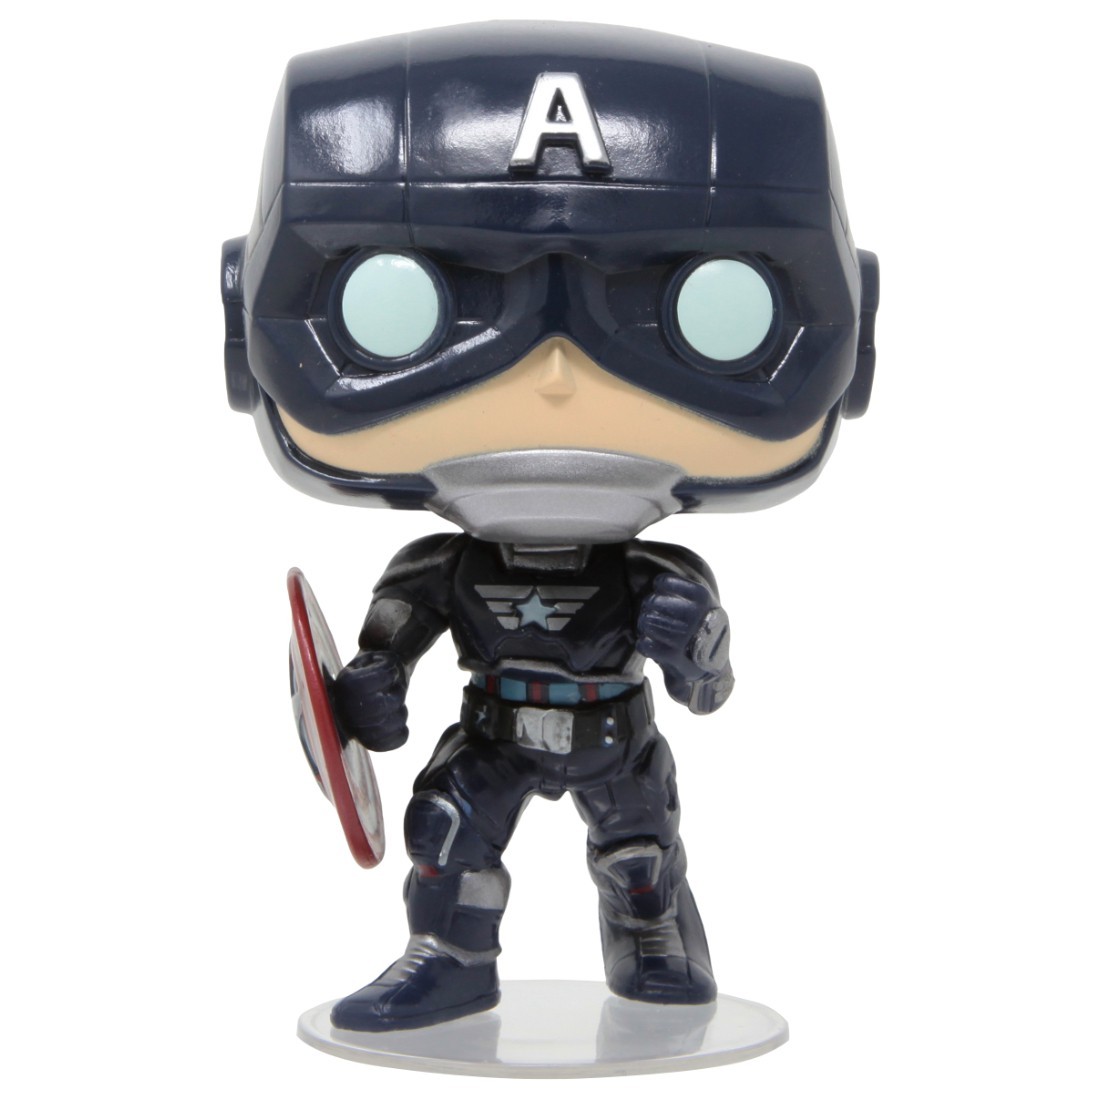 Marvel/'s Avengers Captain America Vinyl Figure for sale online Games Funko Pop